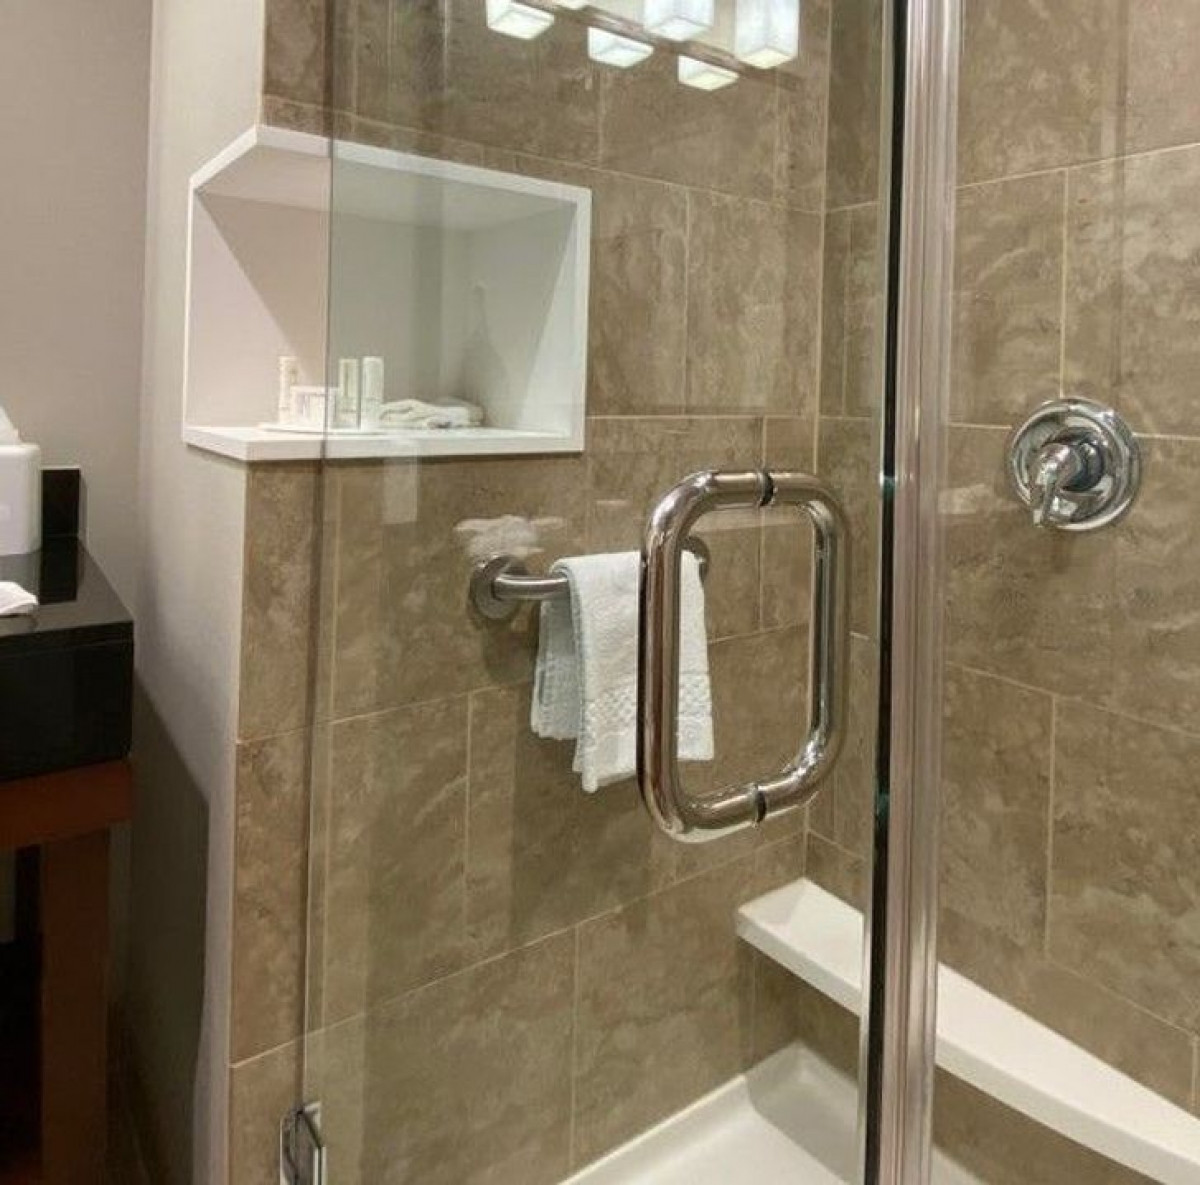 Một khách sạn thiết kế giá để đồ vệ sinh cá nhân ở trong và ngoài cabin tắm, giúp khách du lịch dễ dàng sử dụng.